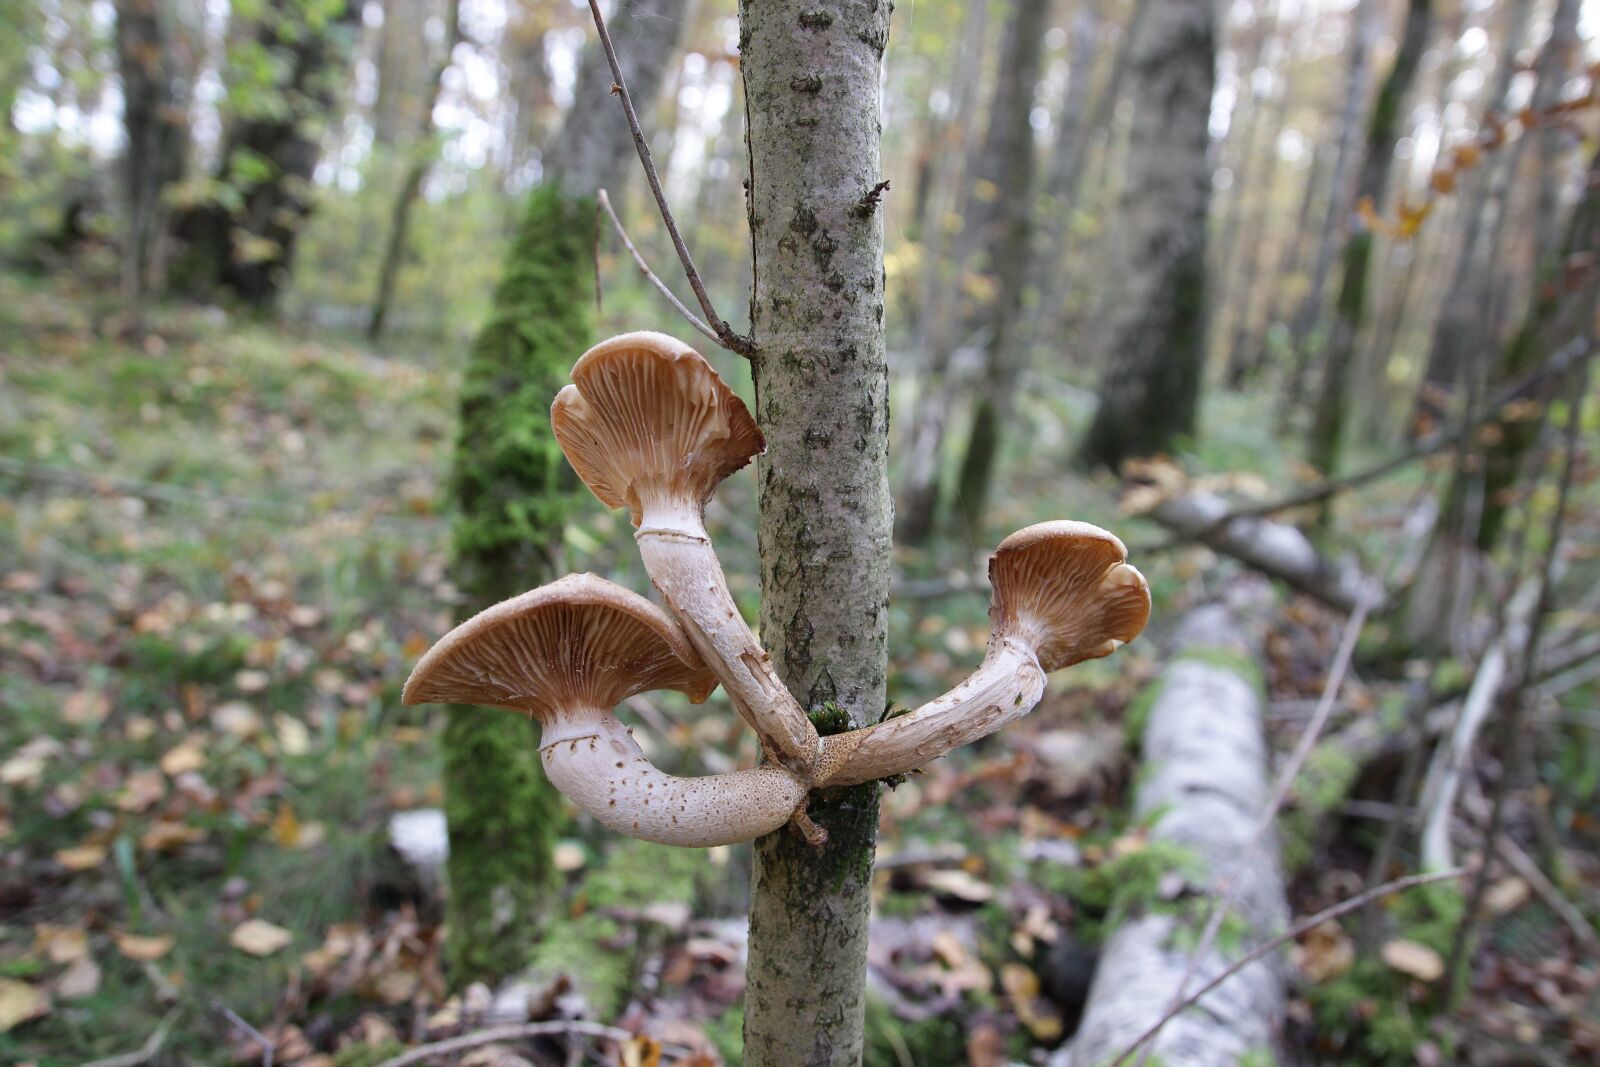 Canon EOS 600D (Rebel EOS T3i / EOS Kiss X5) sample photo. "Mushroom, woody, tree" photography